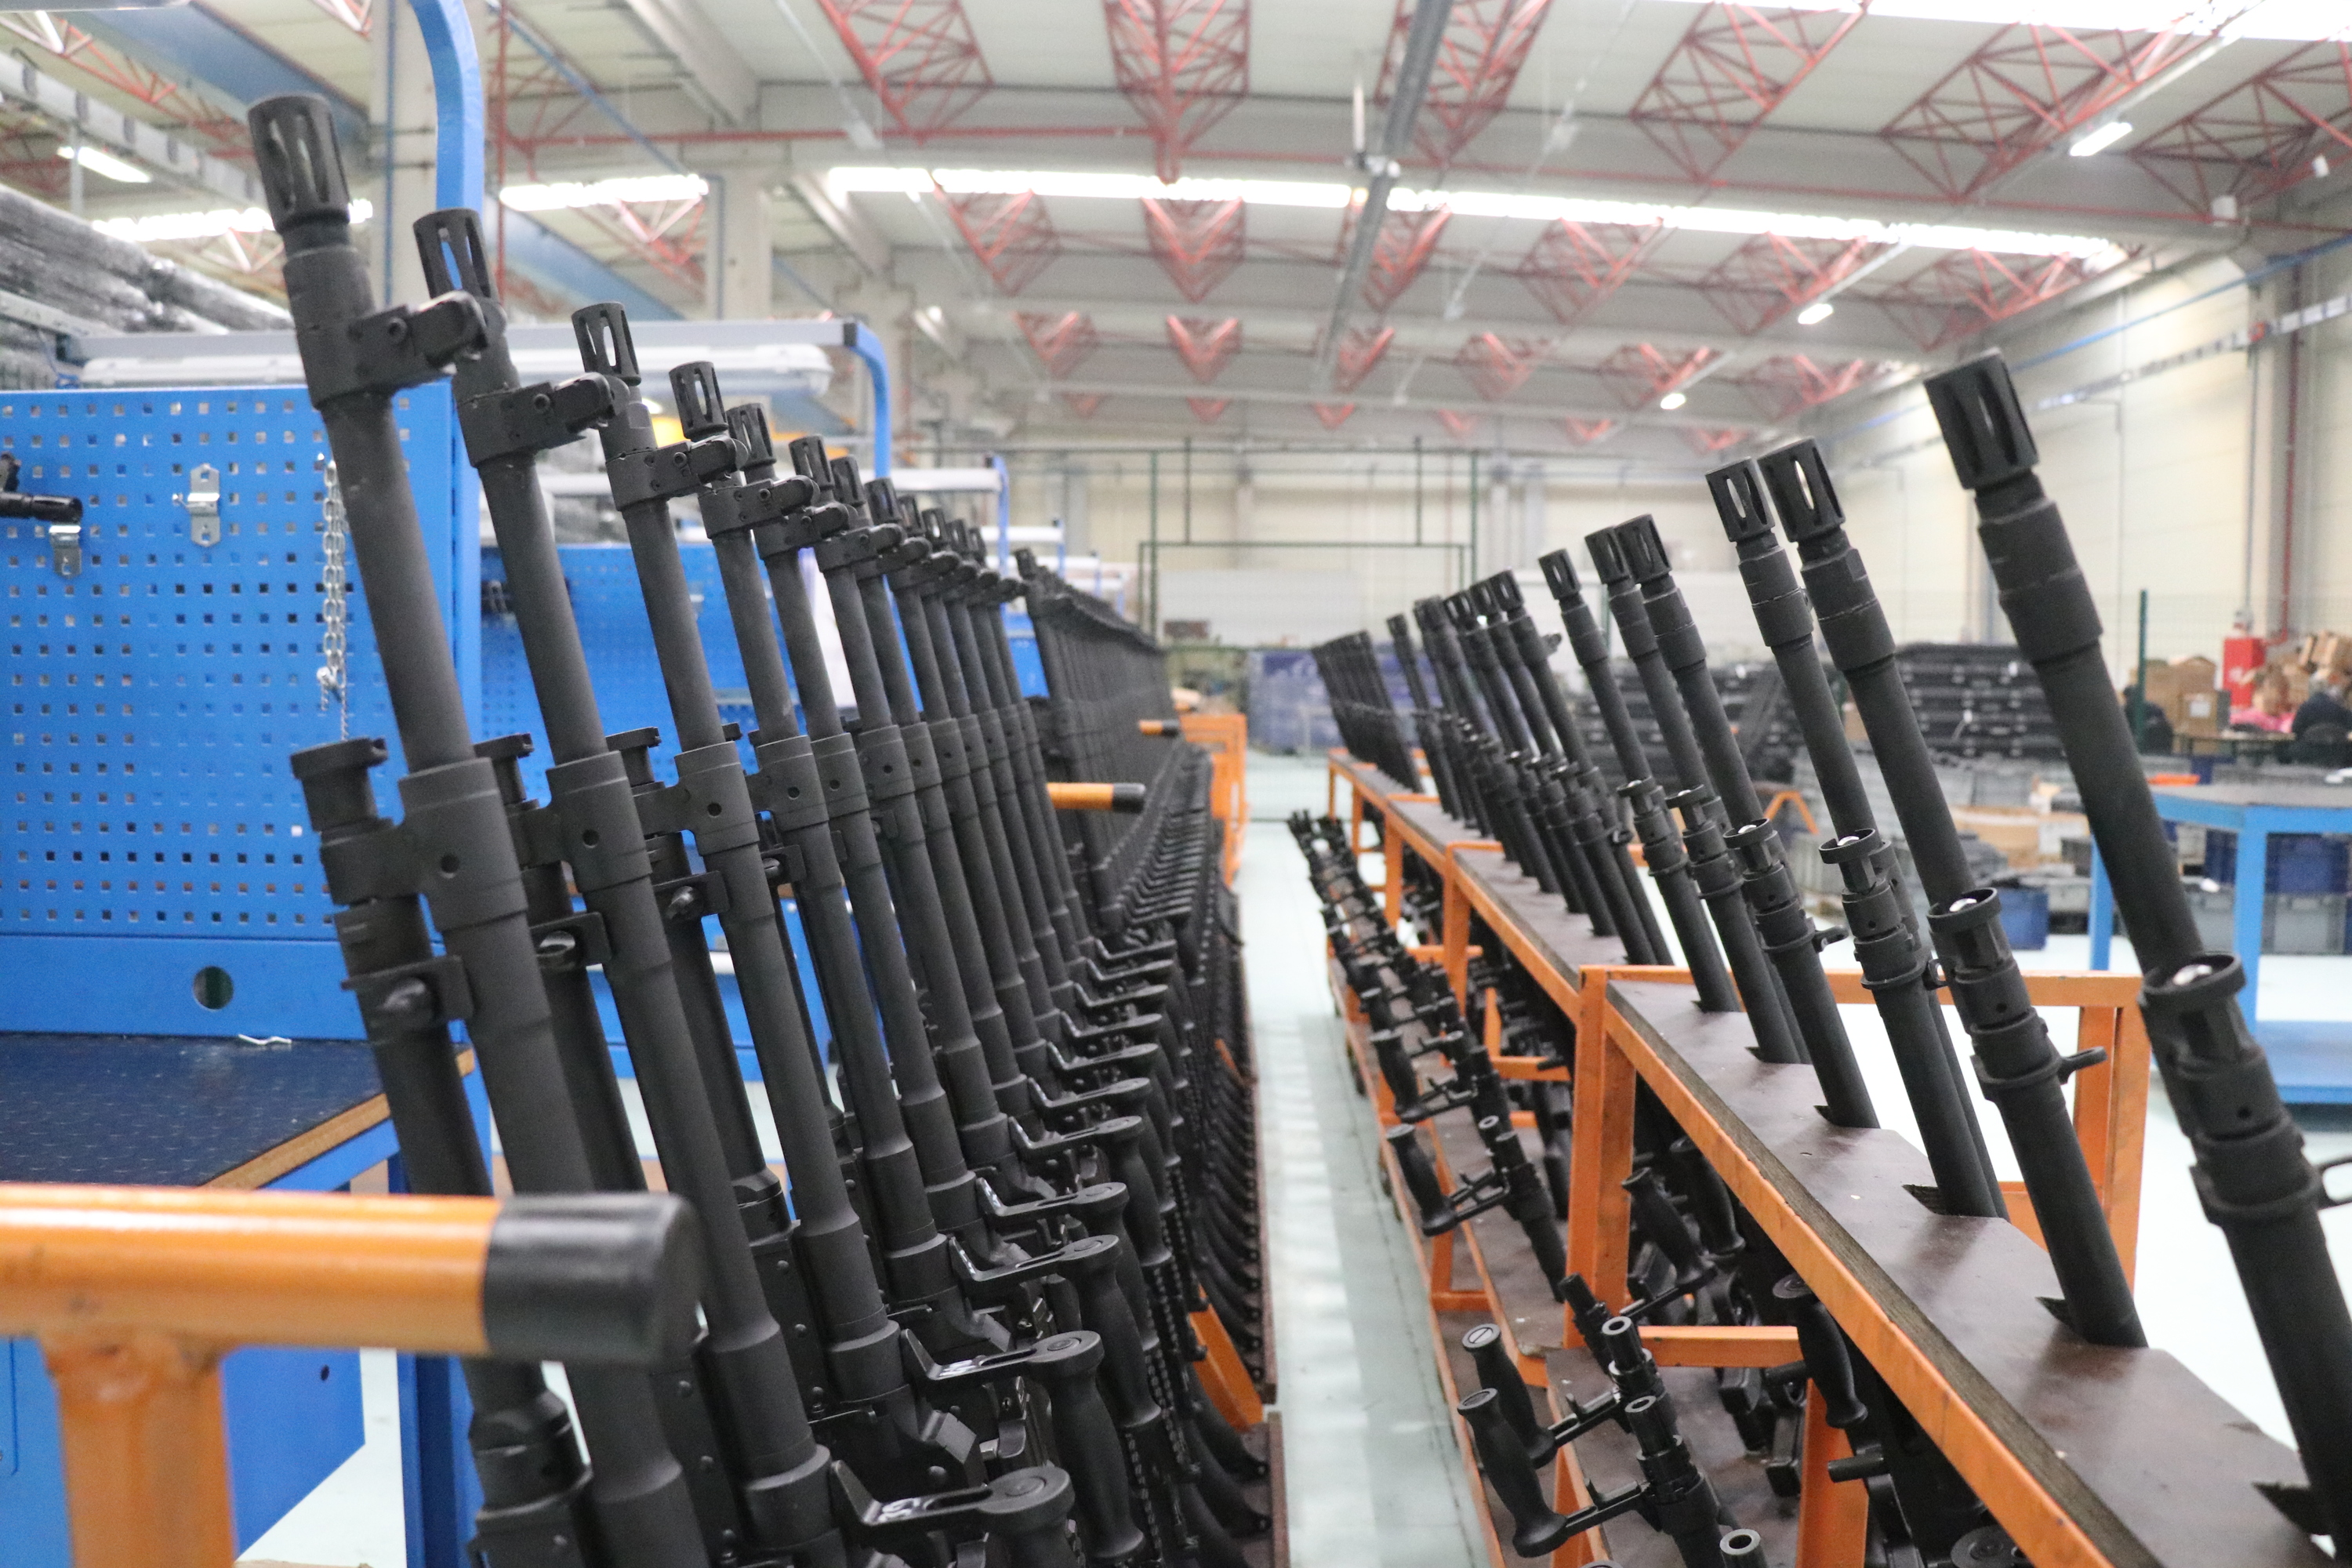 Turkey to add indigenous heavy machine gun to inventory